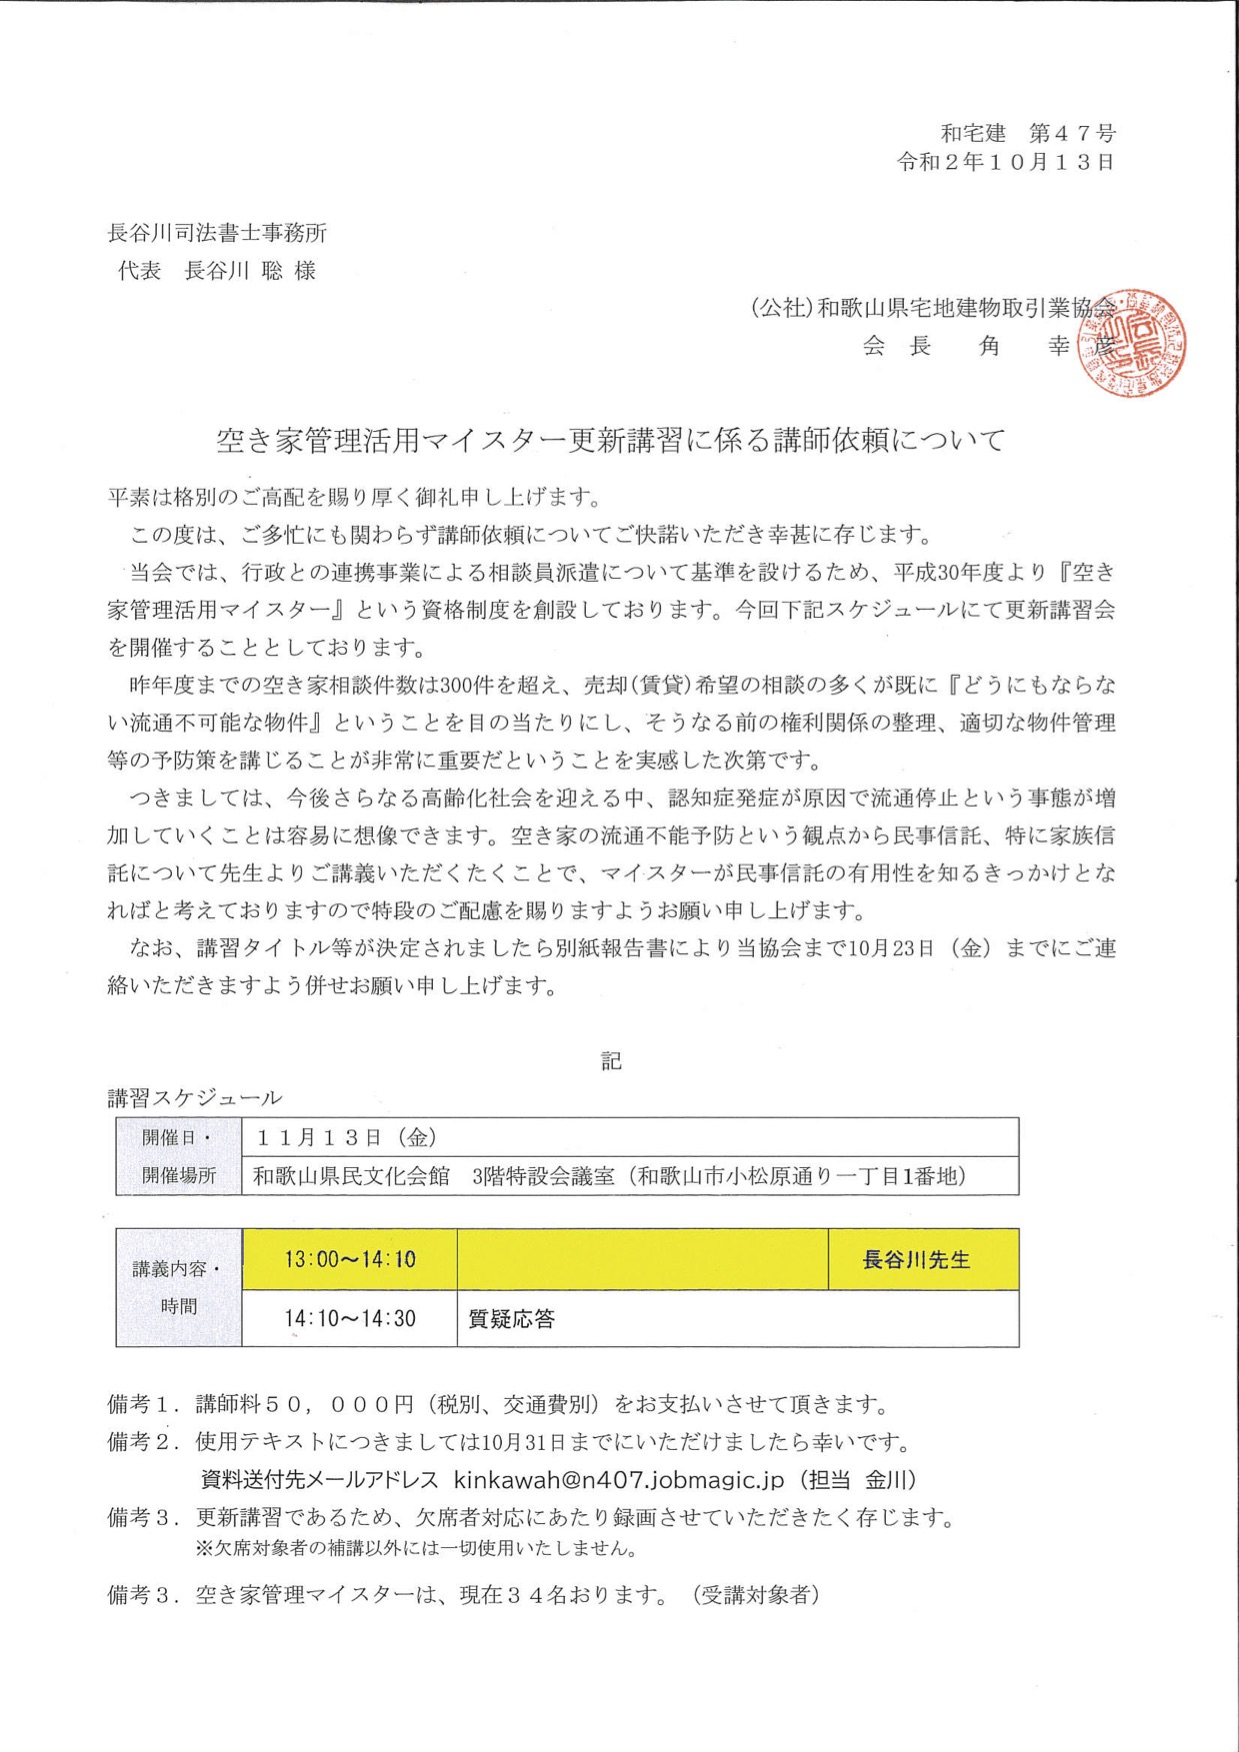 (公社）和歌山県宅地建物取引業協会(令和2年11月13日)